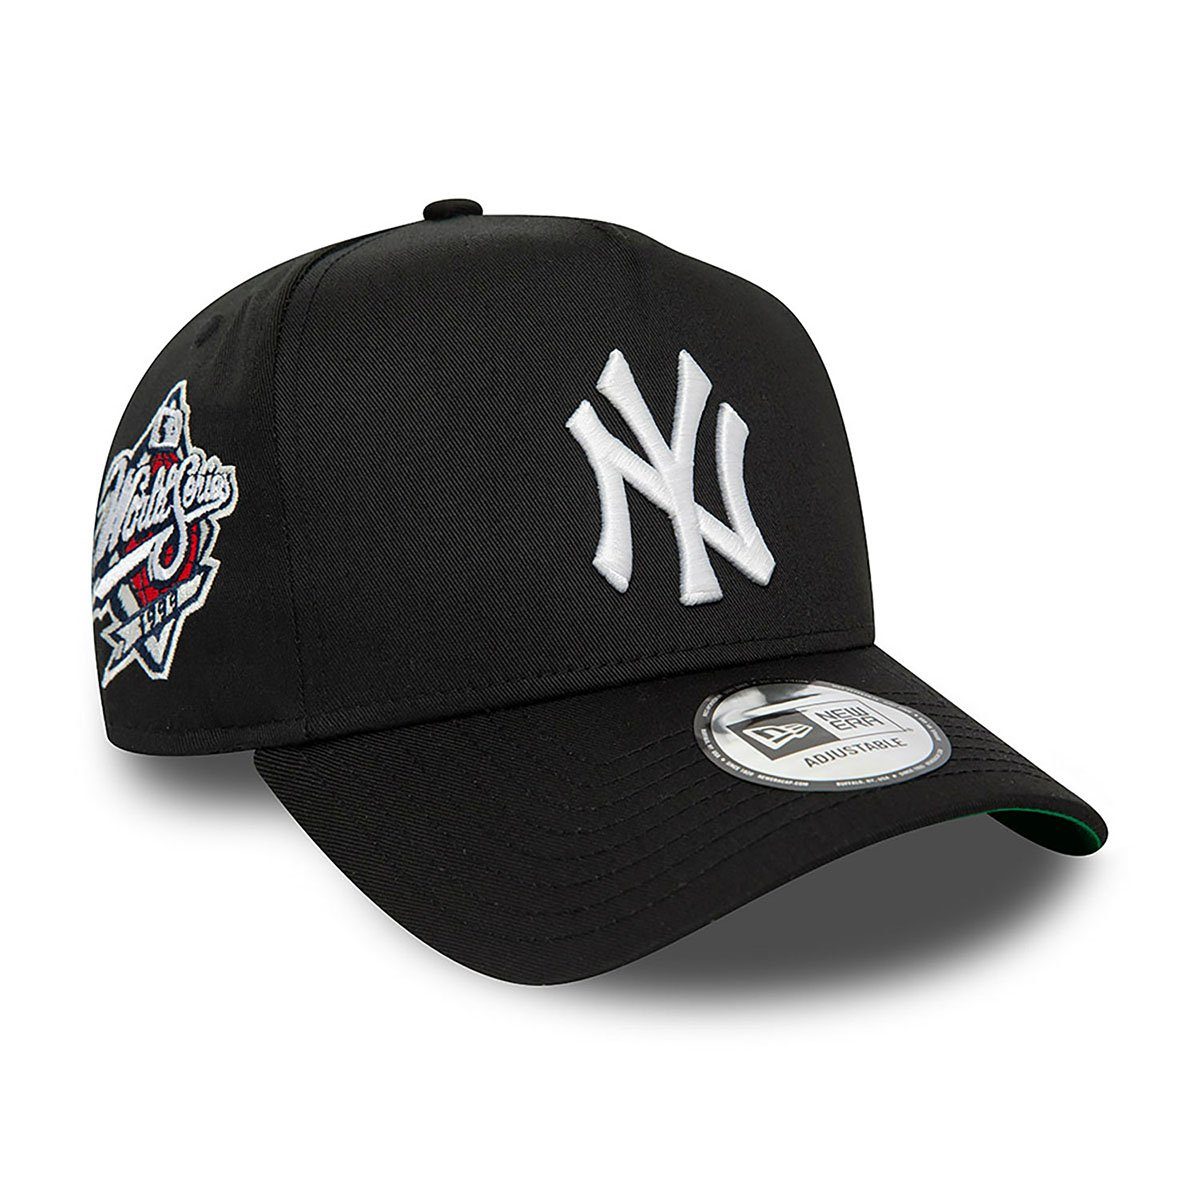 New Era Snapback Cap New York Yankees